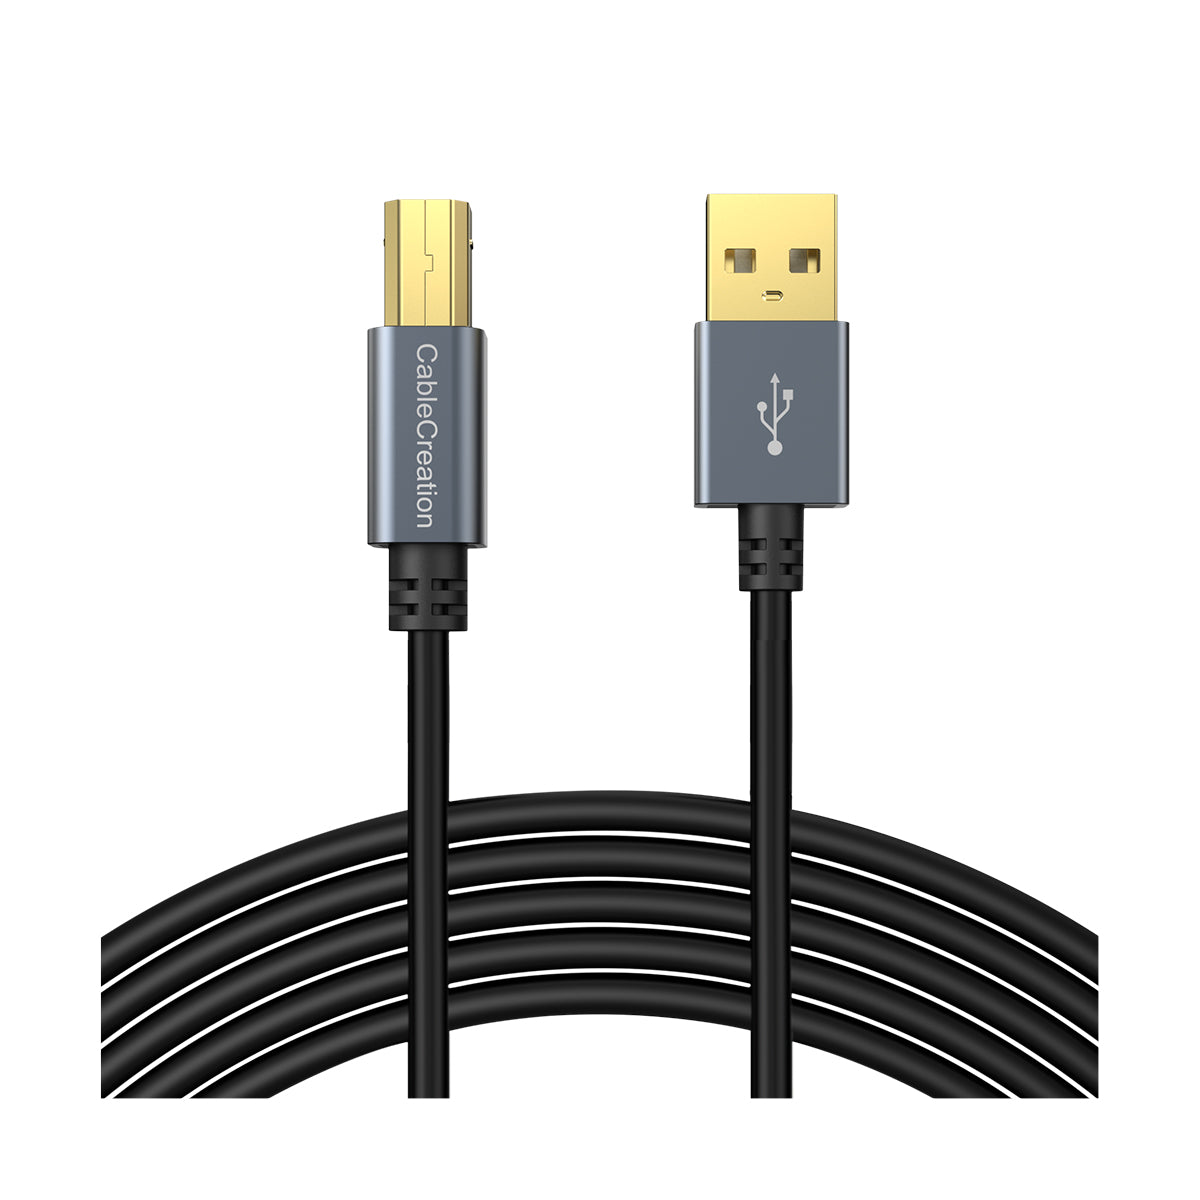 Durable USB Printer Cable USB A to USB B Cord